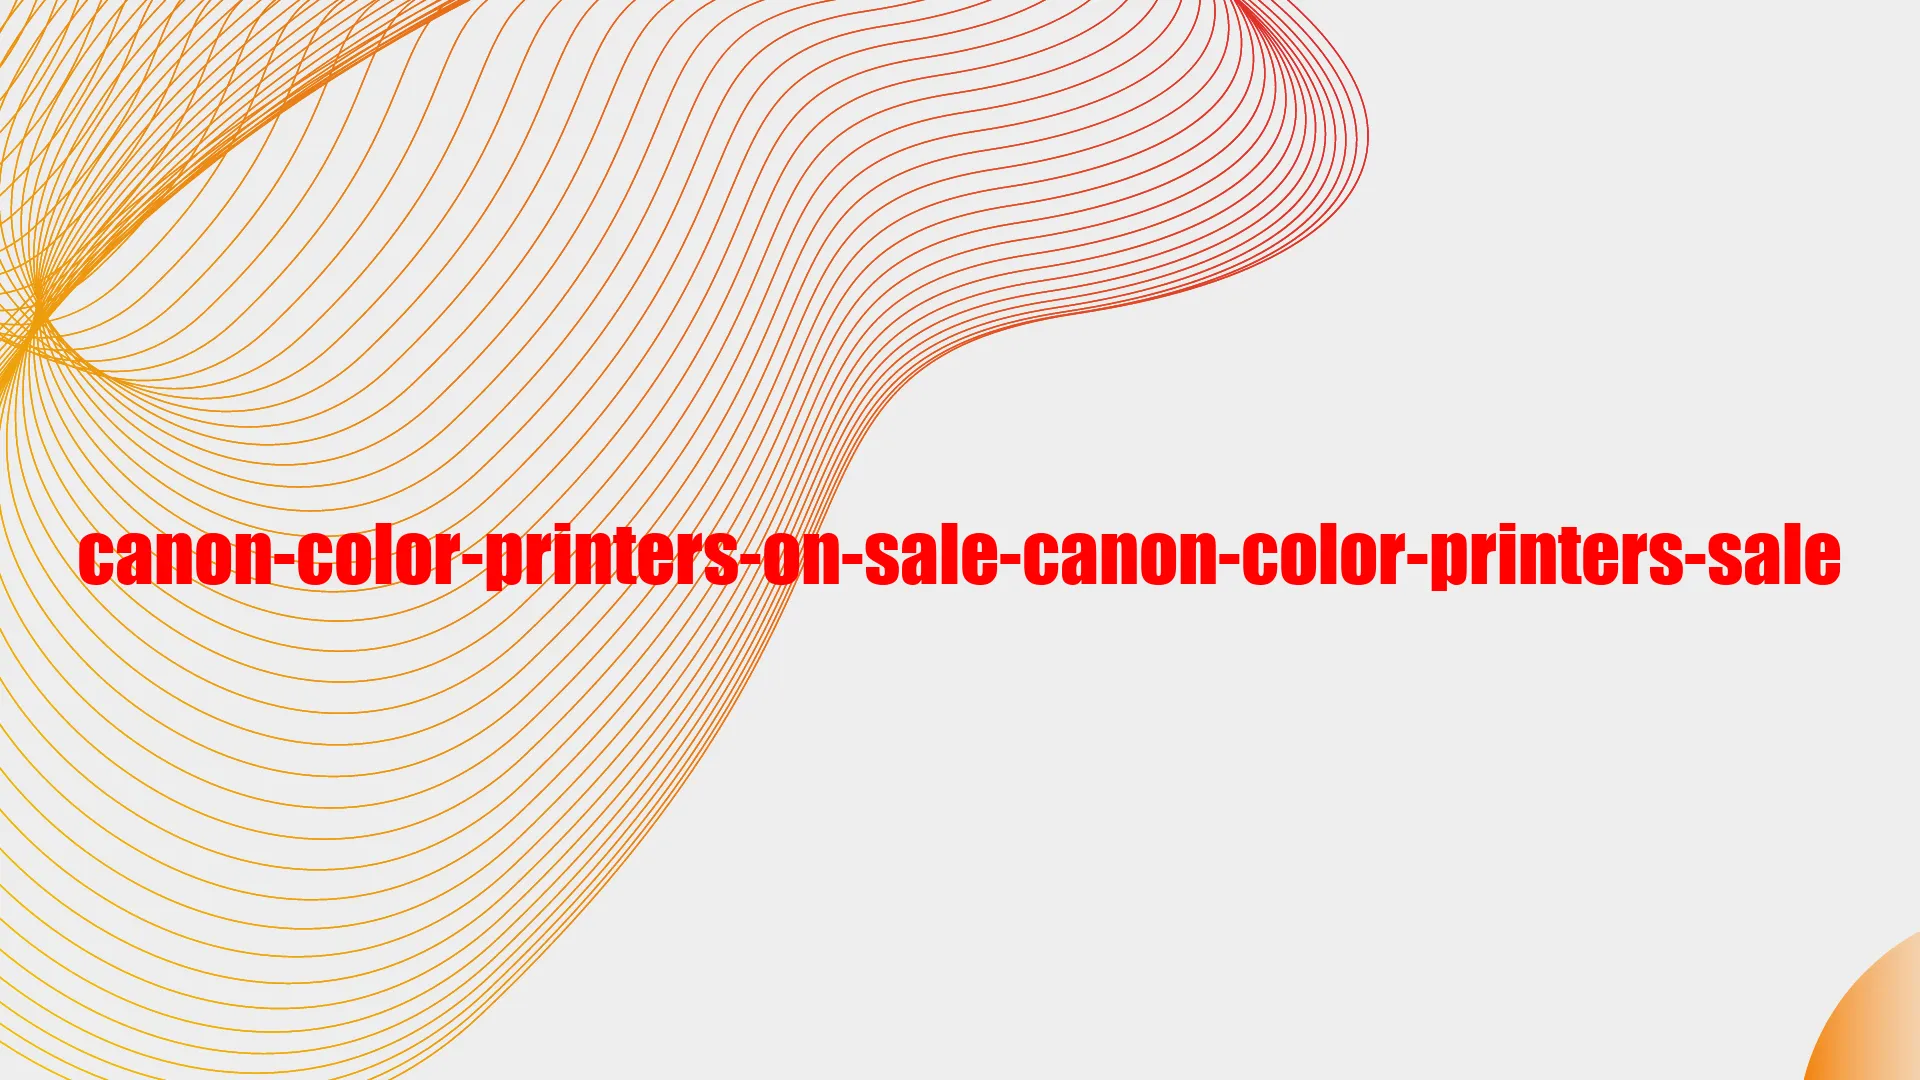 Canon Color Printers on Sale